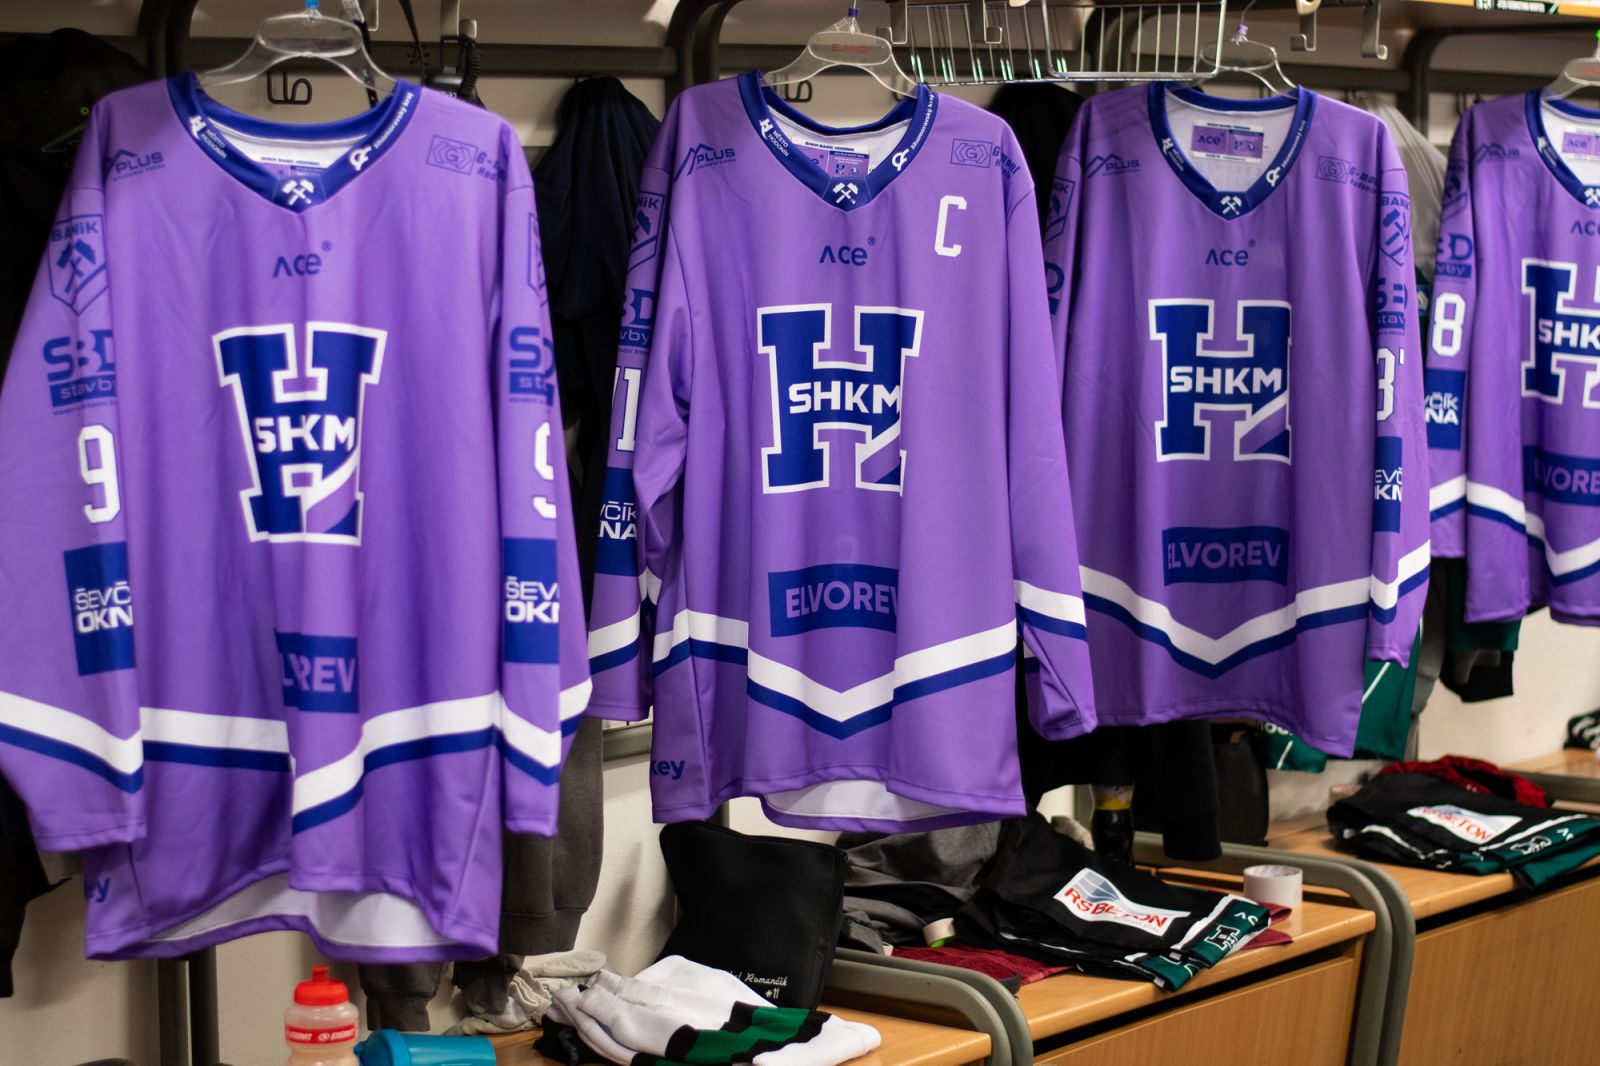 Charitativní aukce originálních dresů Baníku Hodonín z projektu Hokej proti rakovině fotka